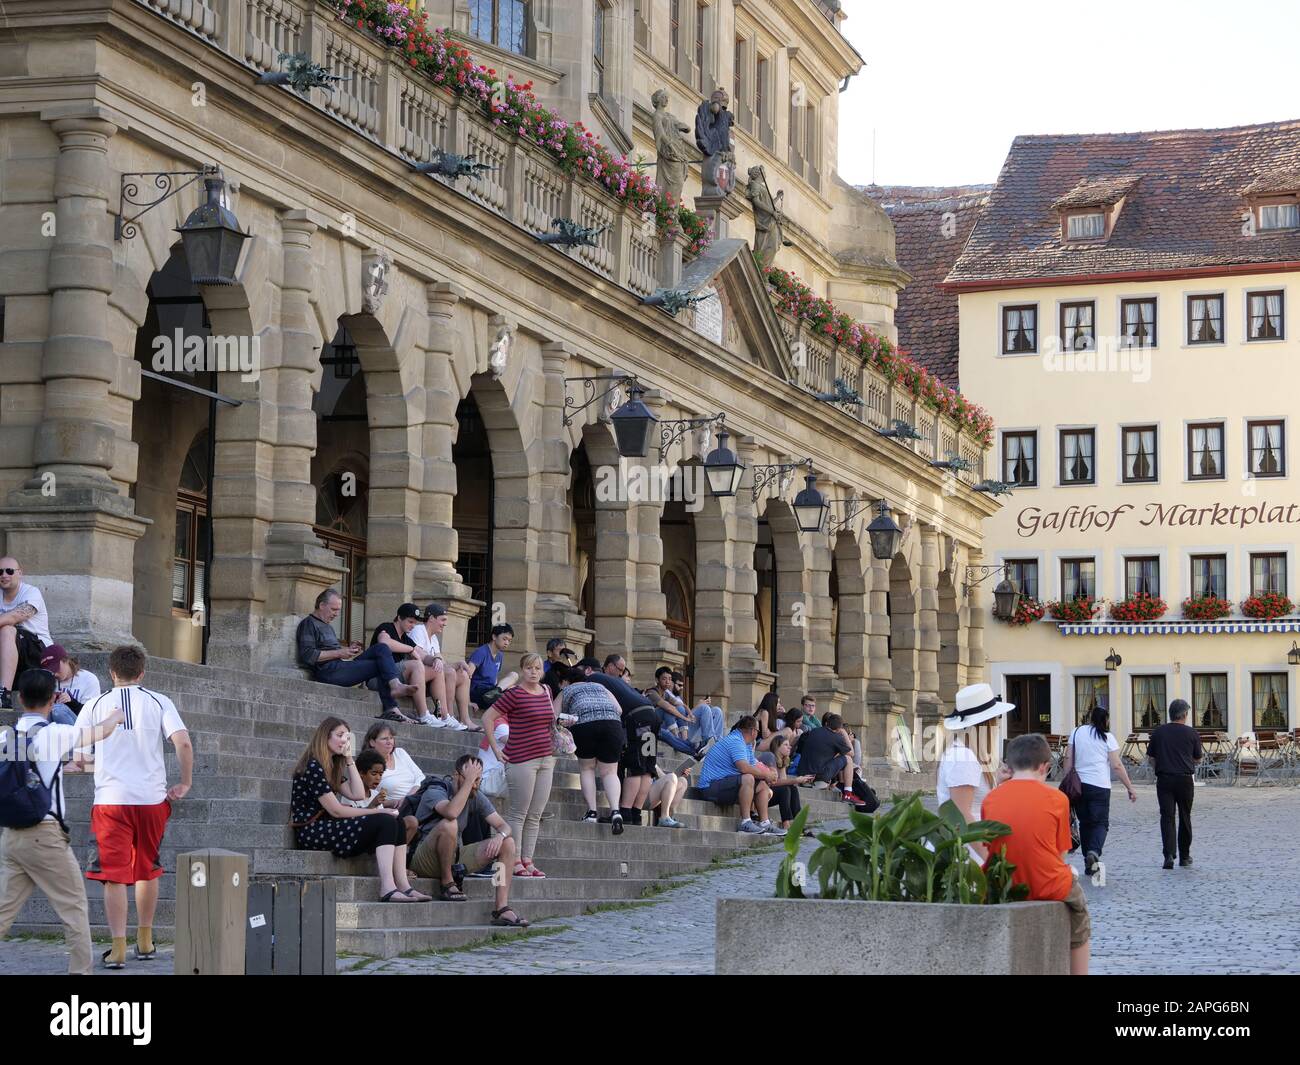 Zunfthalle am Marktplatz, Altstadt von Rothenburg ob der Tauber, Franken, Bayern, Deutschland Stockfoto